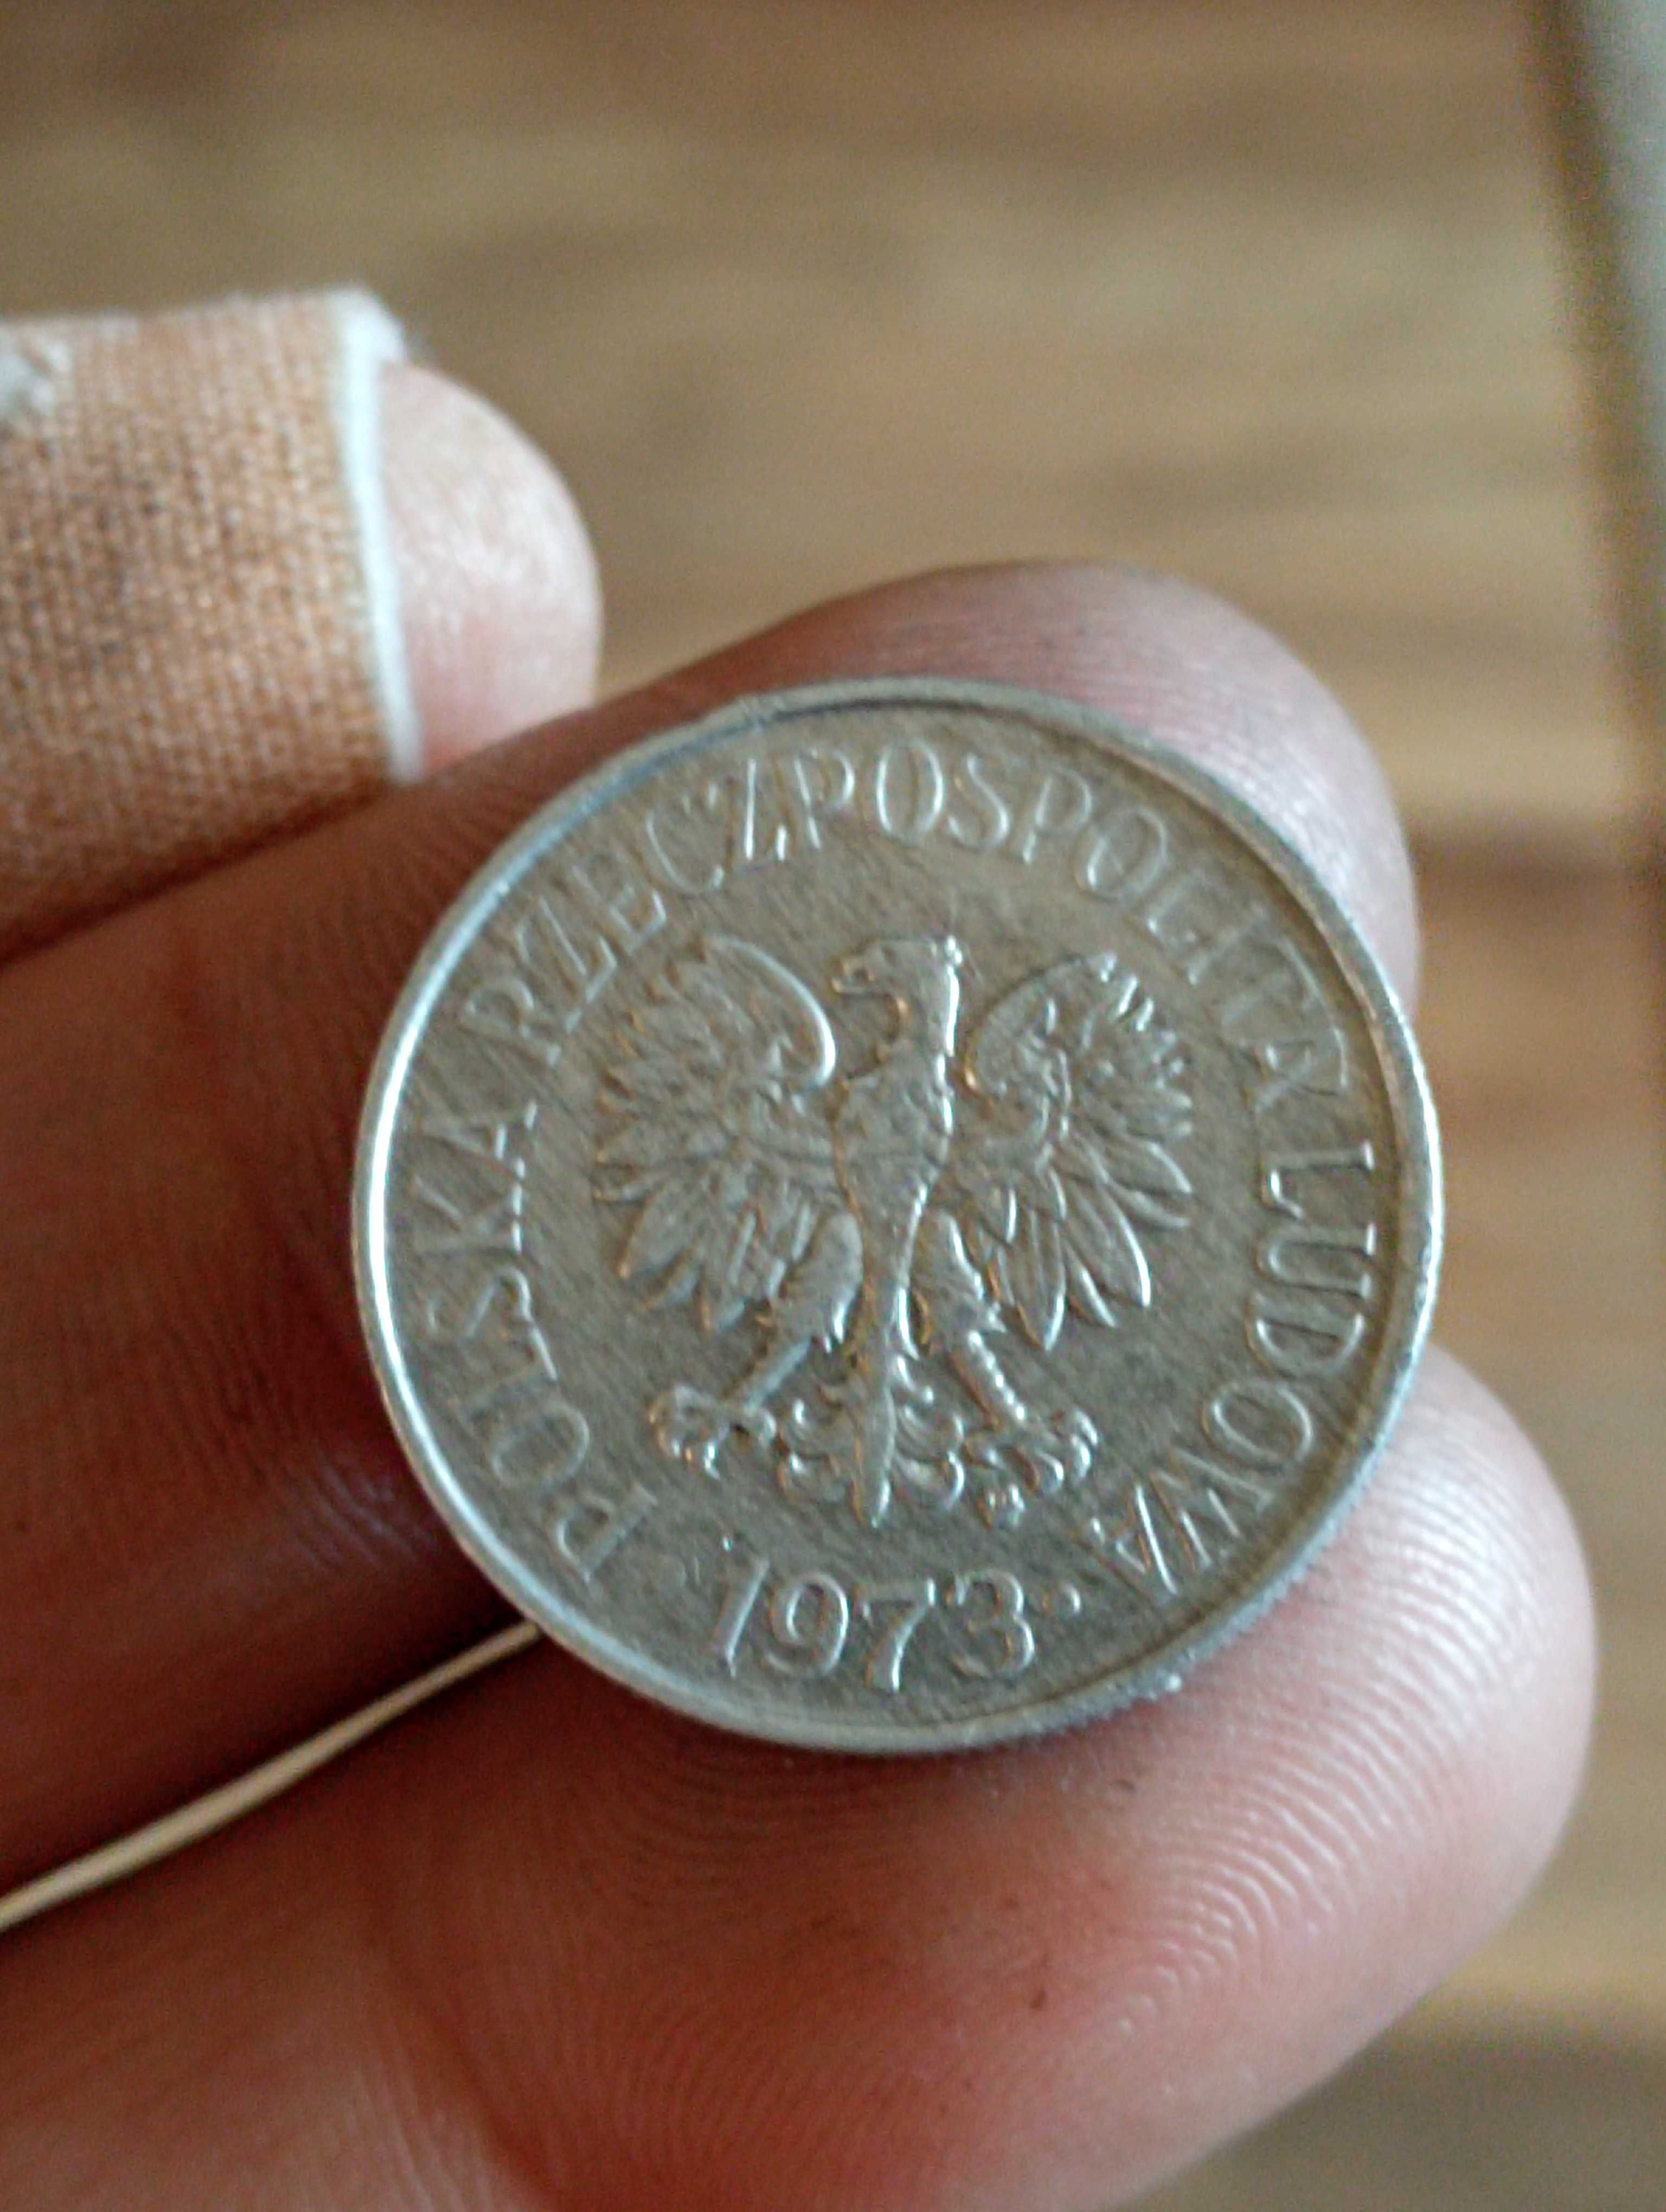 Sprzedam monete cz 50 groszy 1973 r